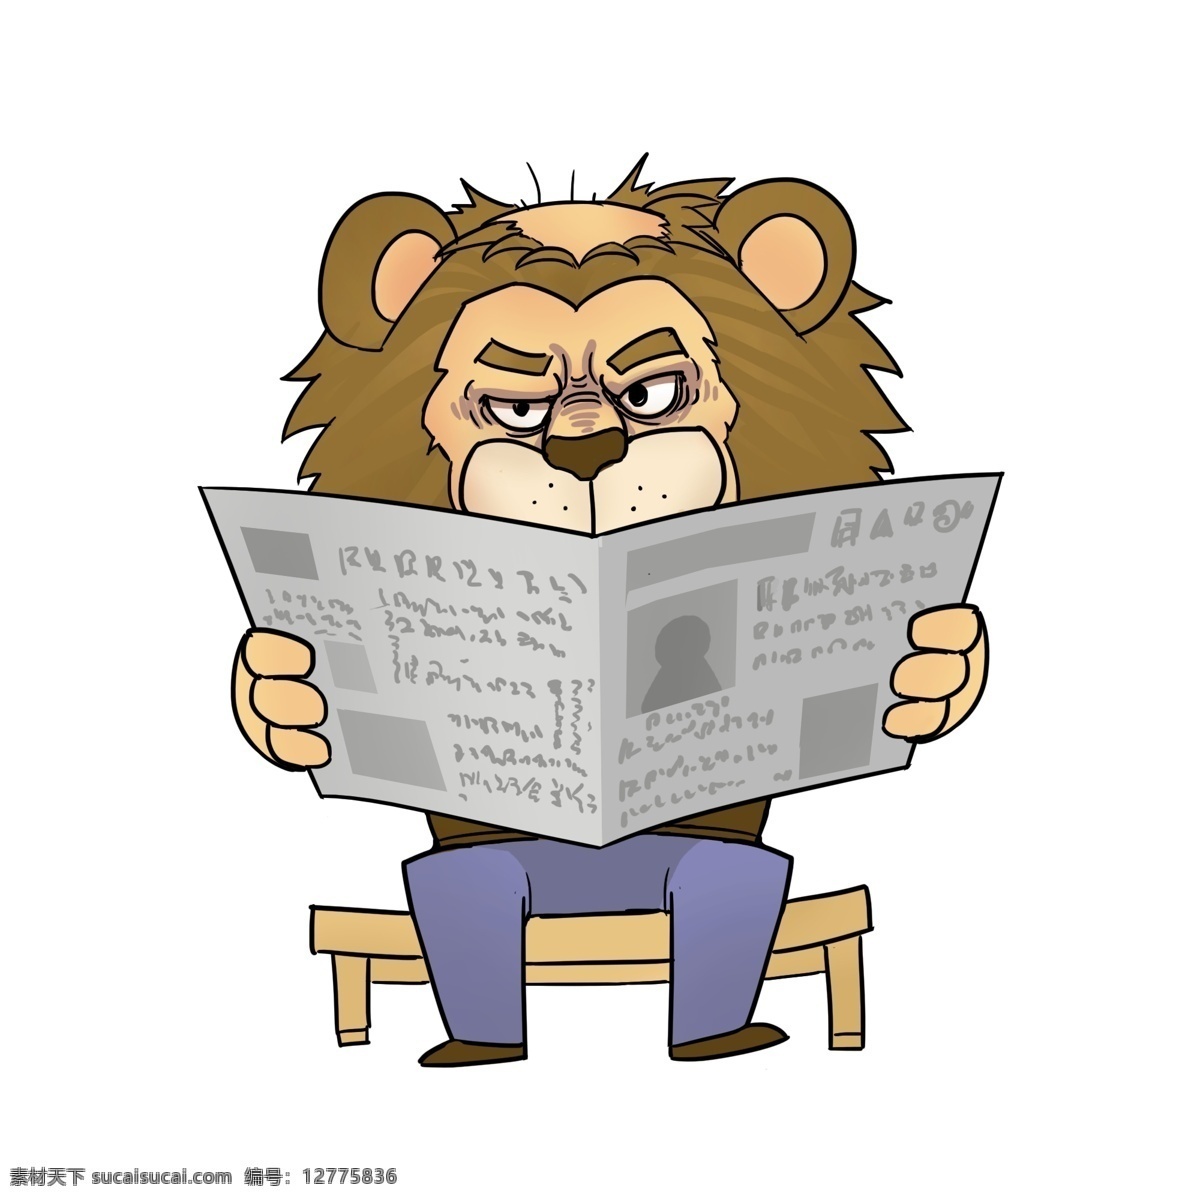 元素 秃头 动物 拟人 狮子 卡通 手绘 趣味 插画